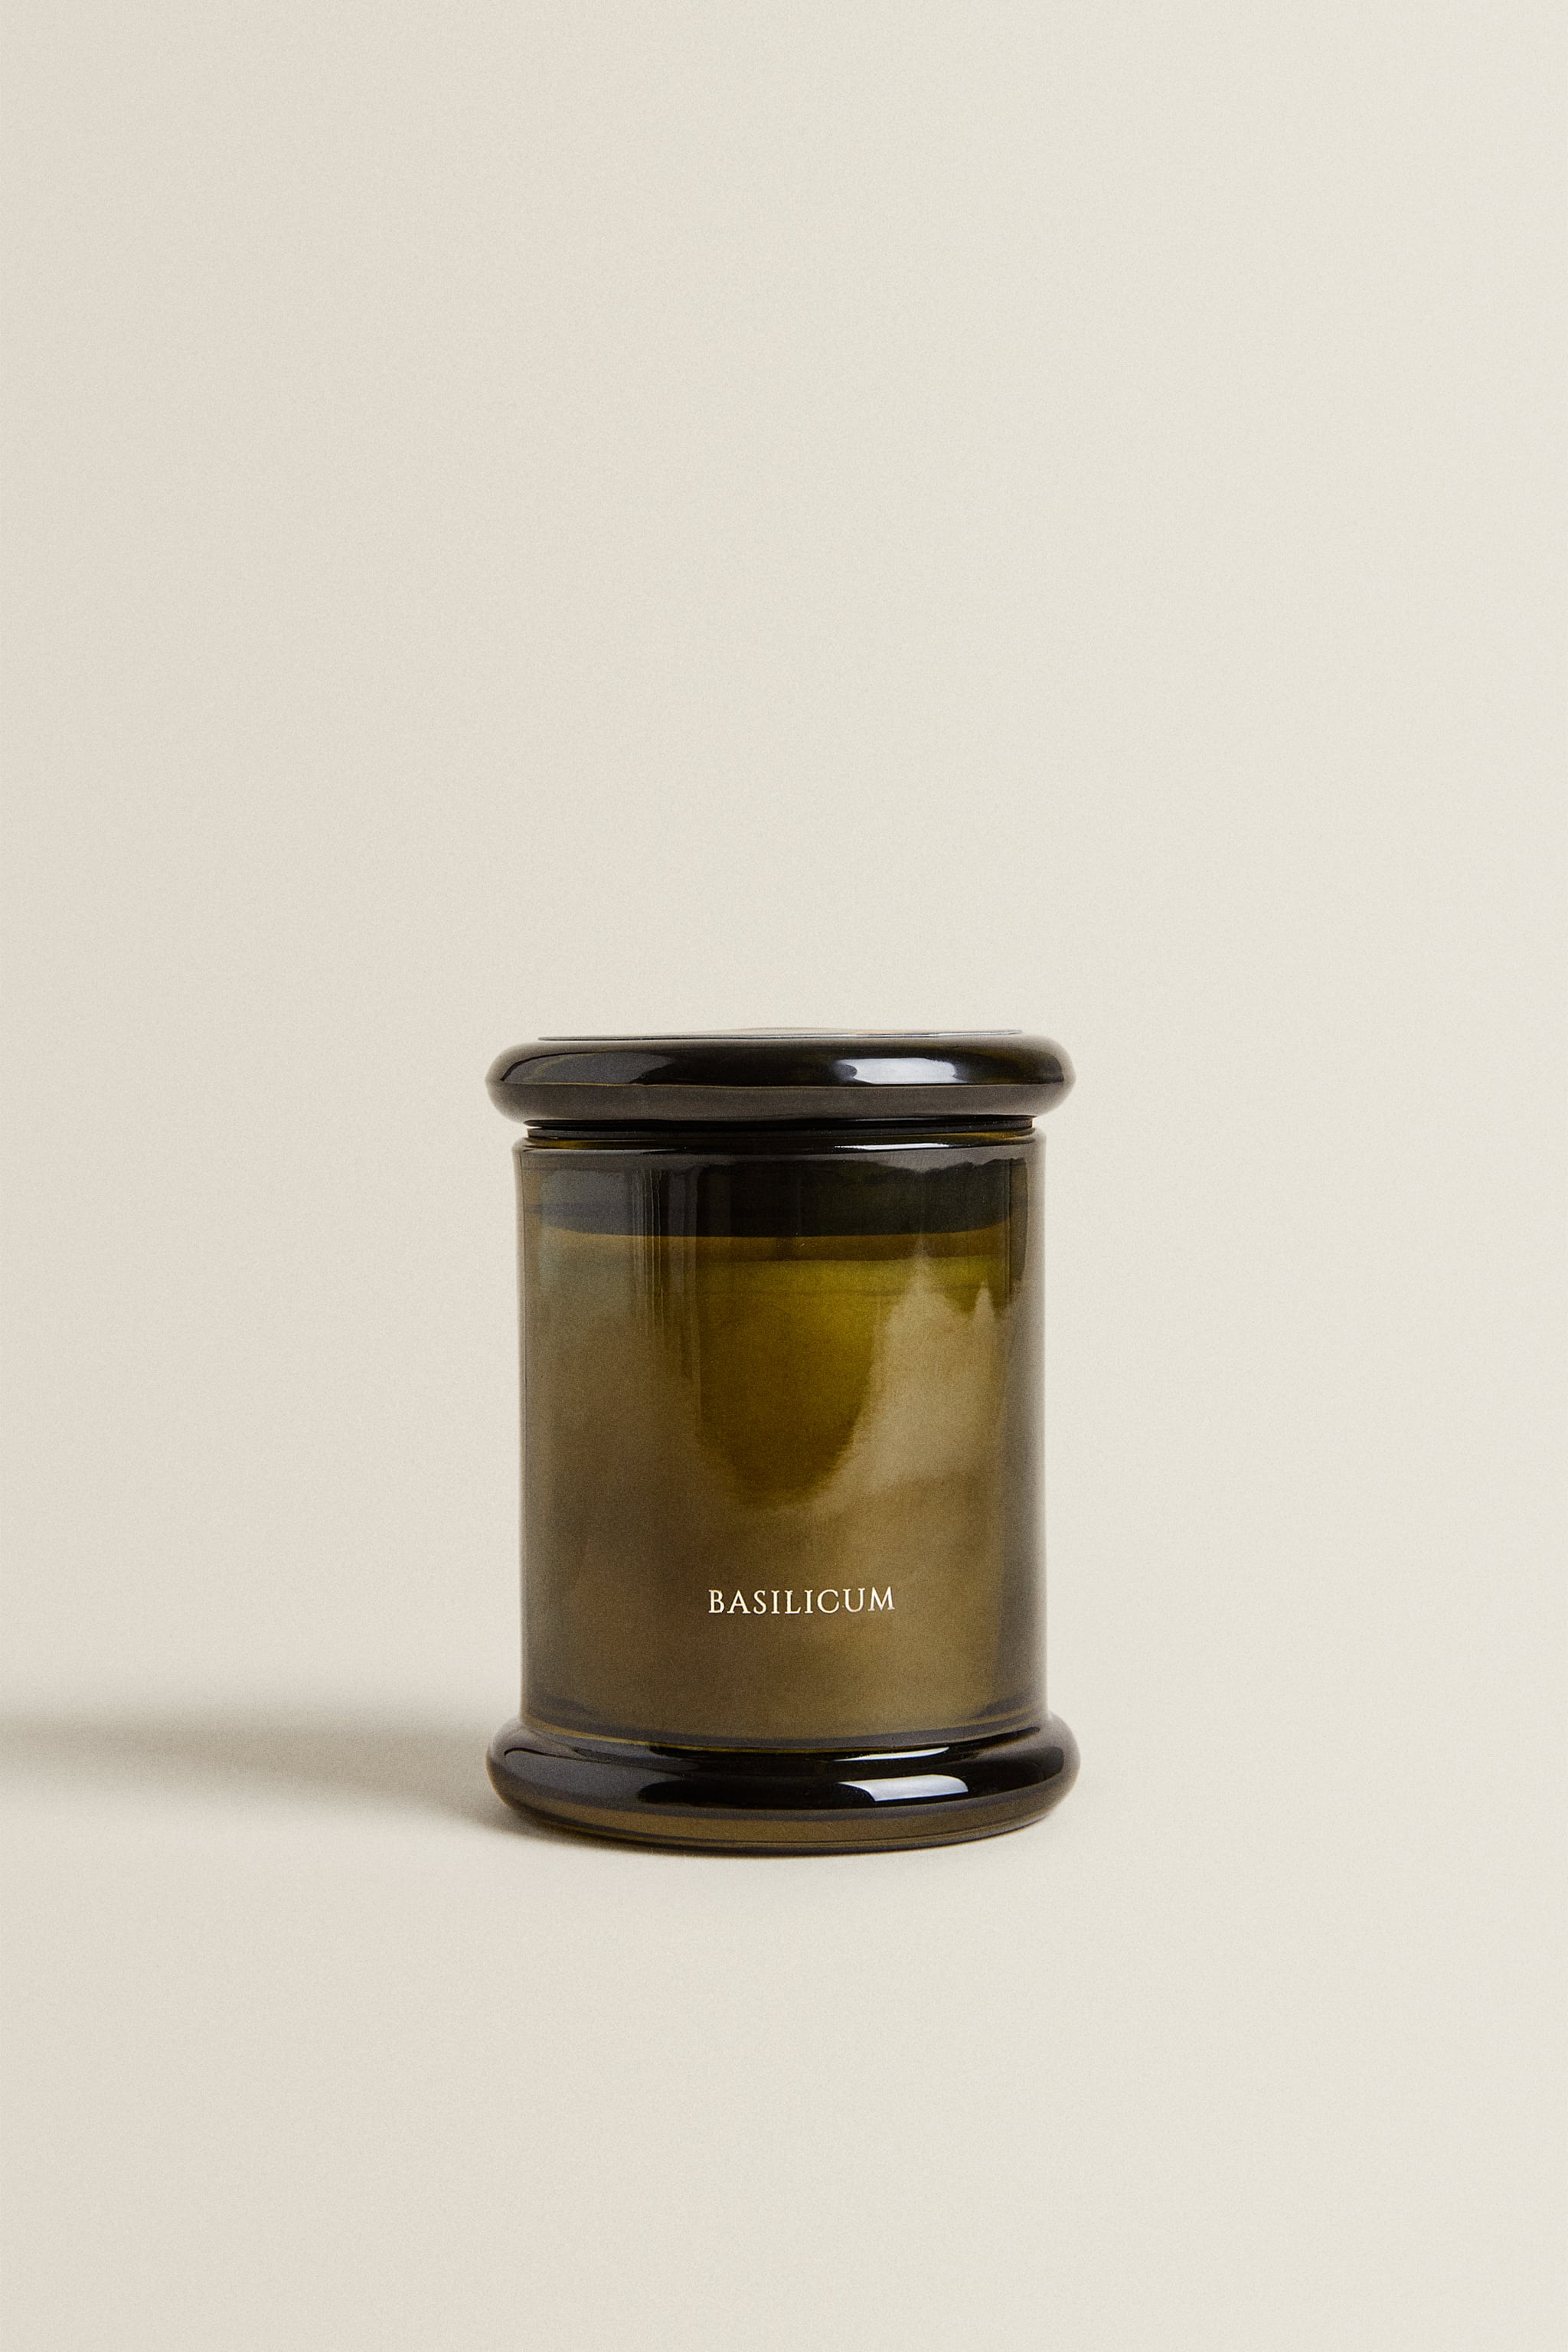 (150 г) ароматическая свеча базиликум Zara, монетный двор шоколад монетный двор молочный в дропсах 400 г